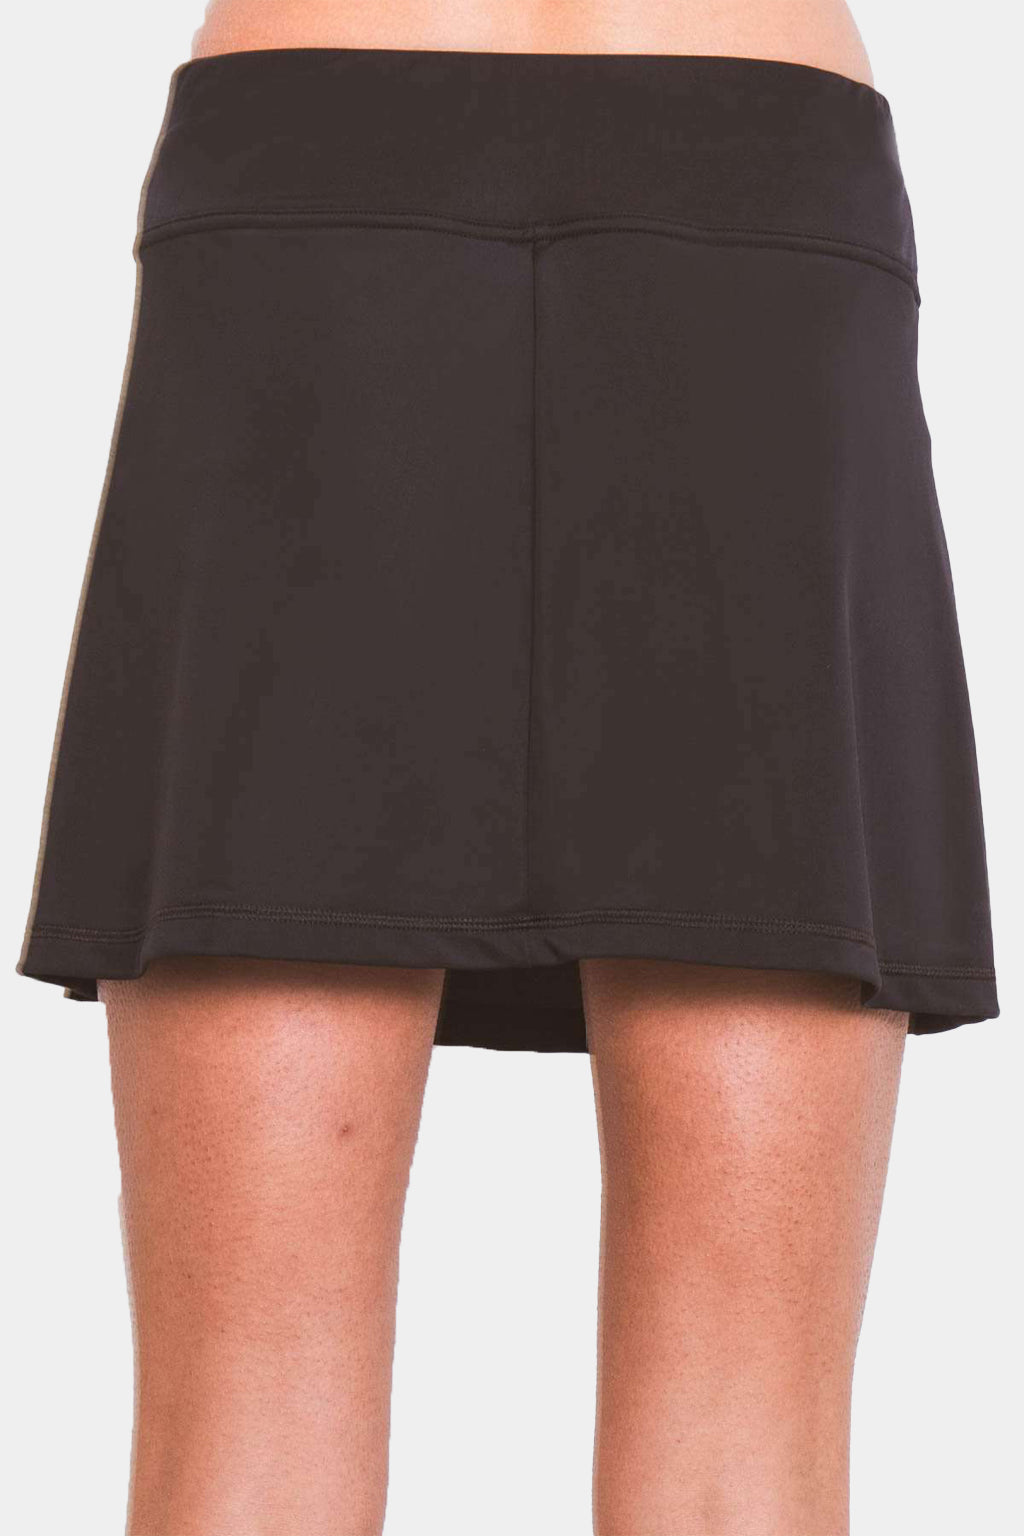 Coega - Ladies Swim Skirt